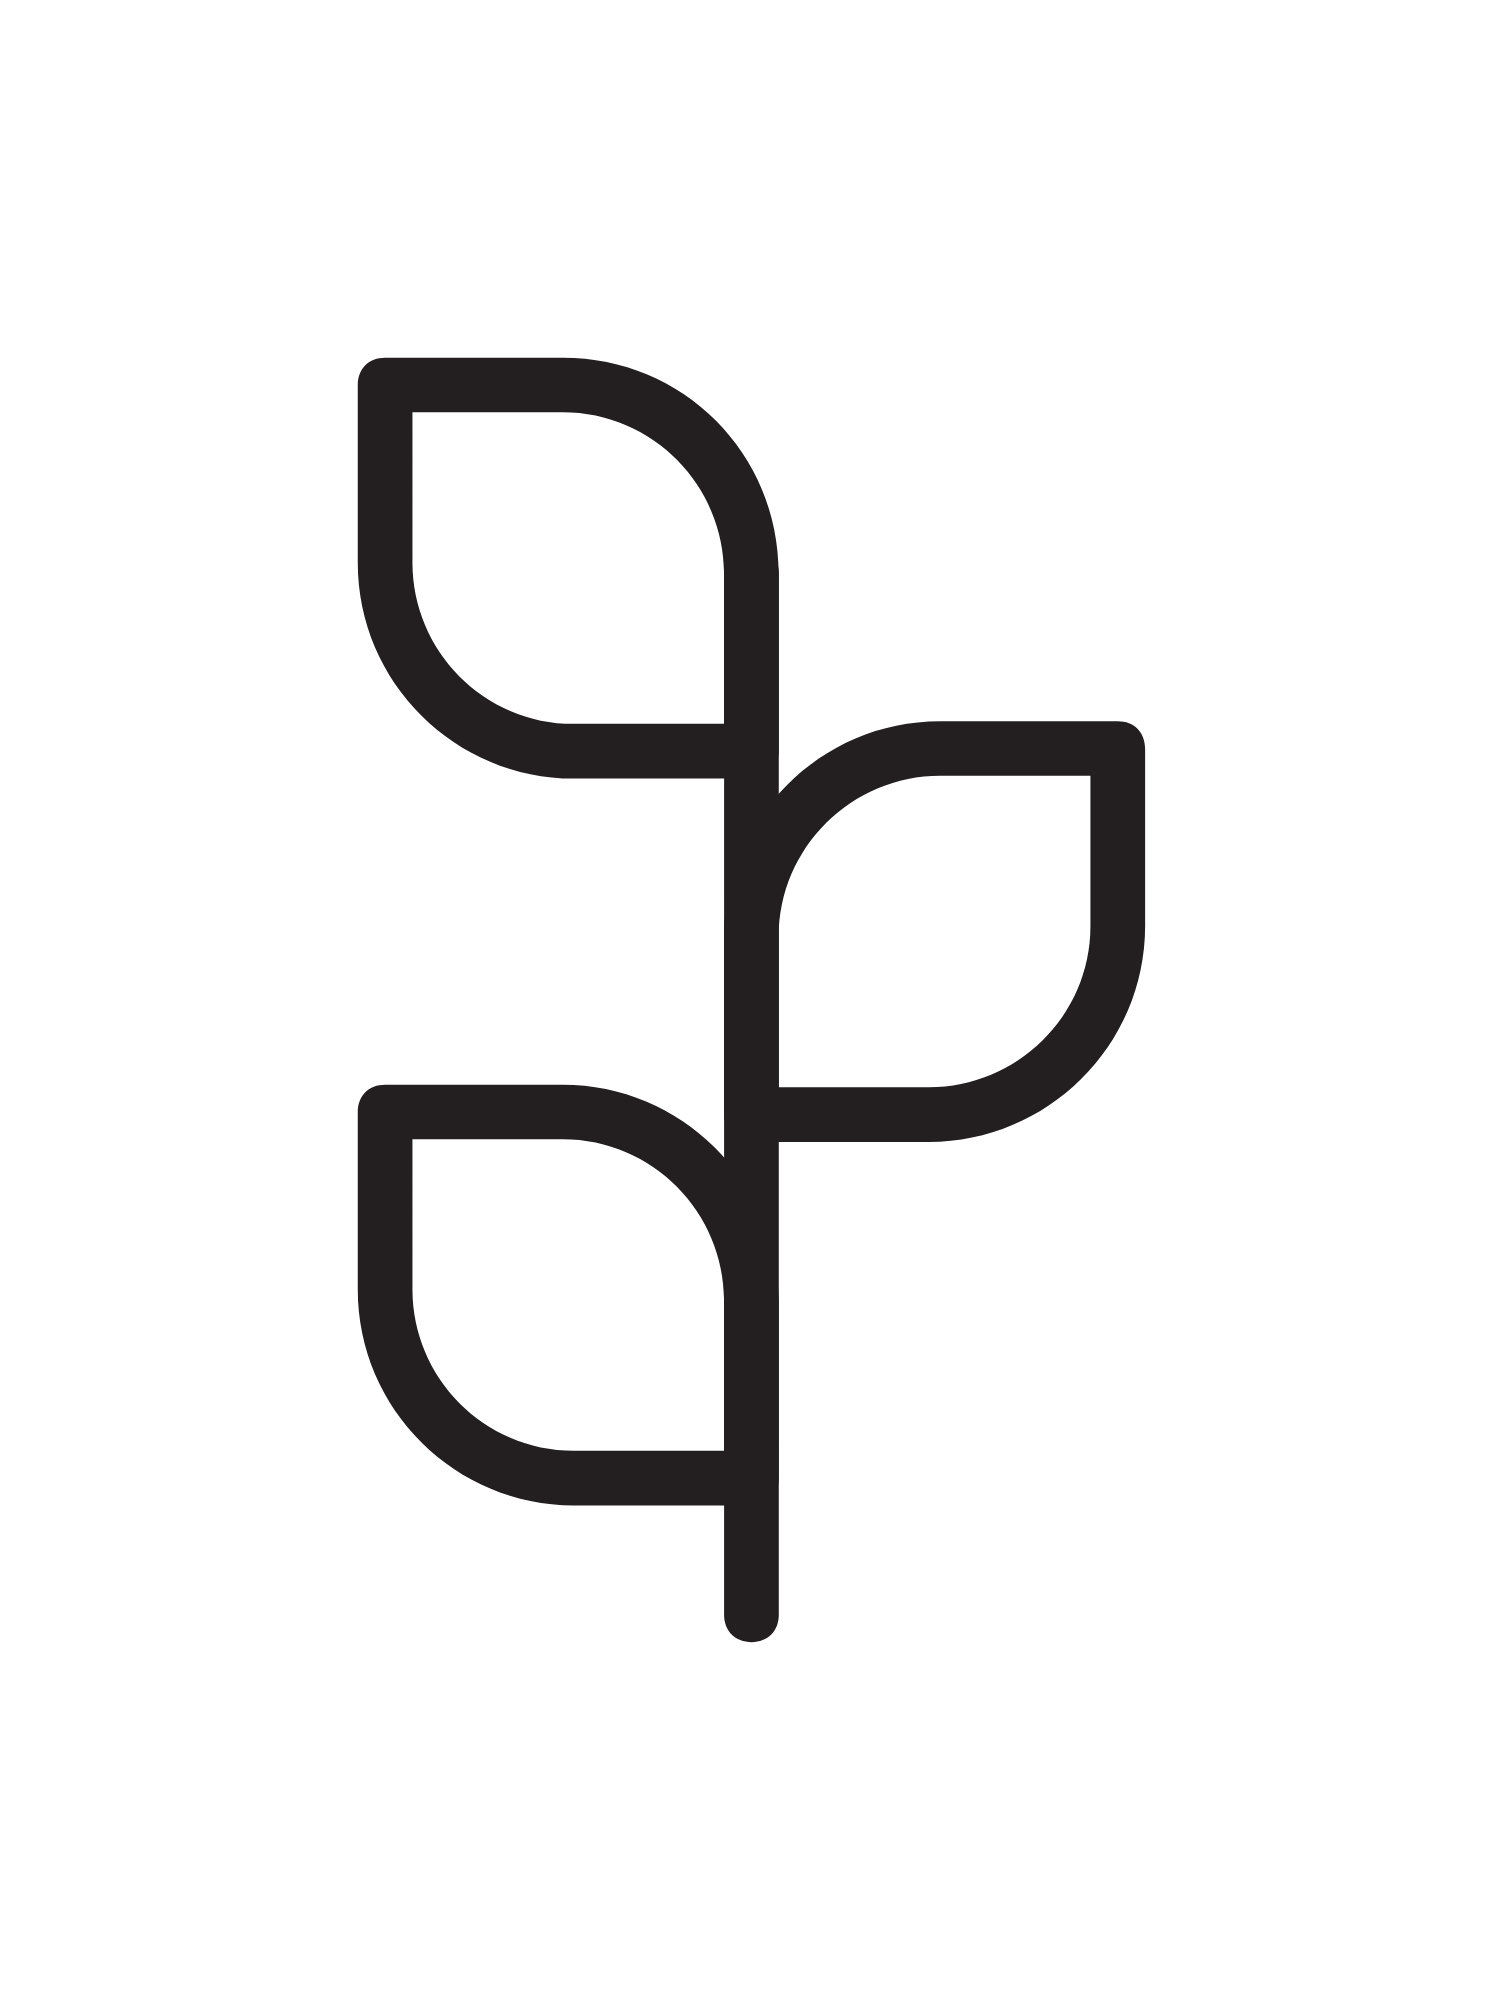 logo (3).png